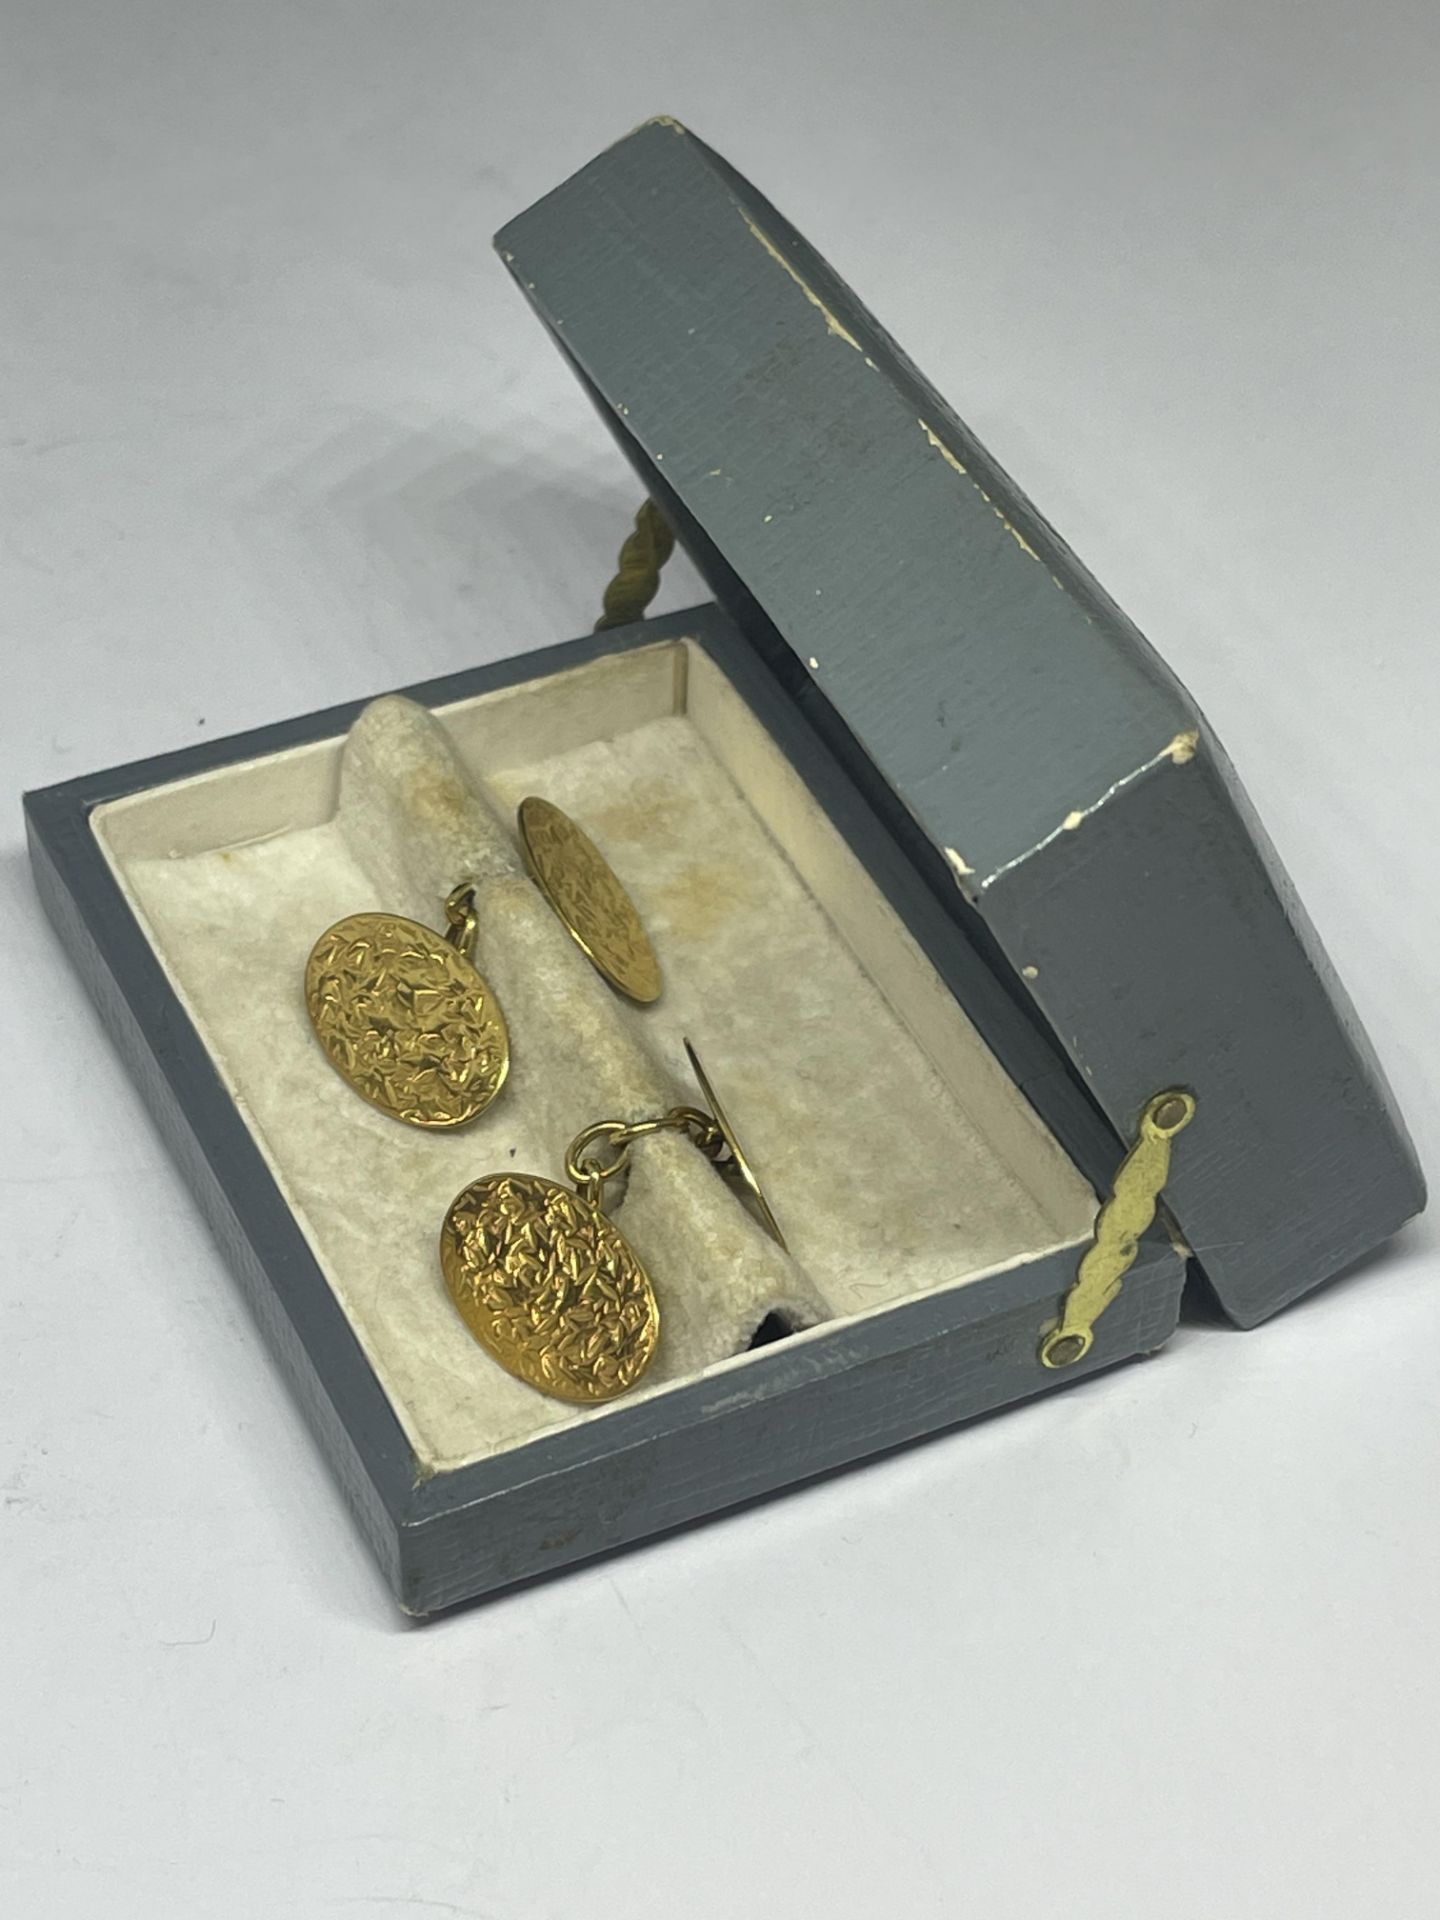 A PAIR OF 9 CARAT GOLD BIRMINGHAM 1900 CUFFLINKS GROSS WEIGHT 4.97 GRAMS IN A PRESENTATION BOX